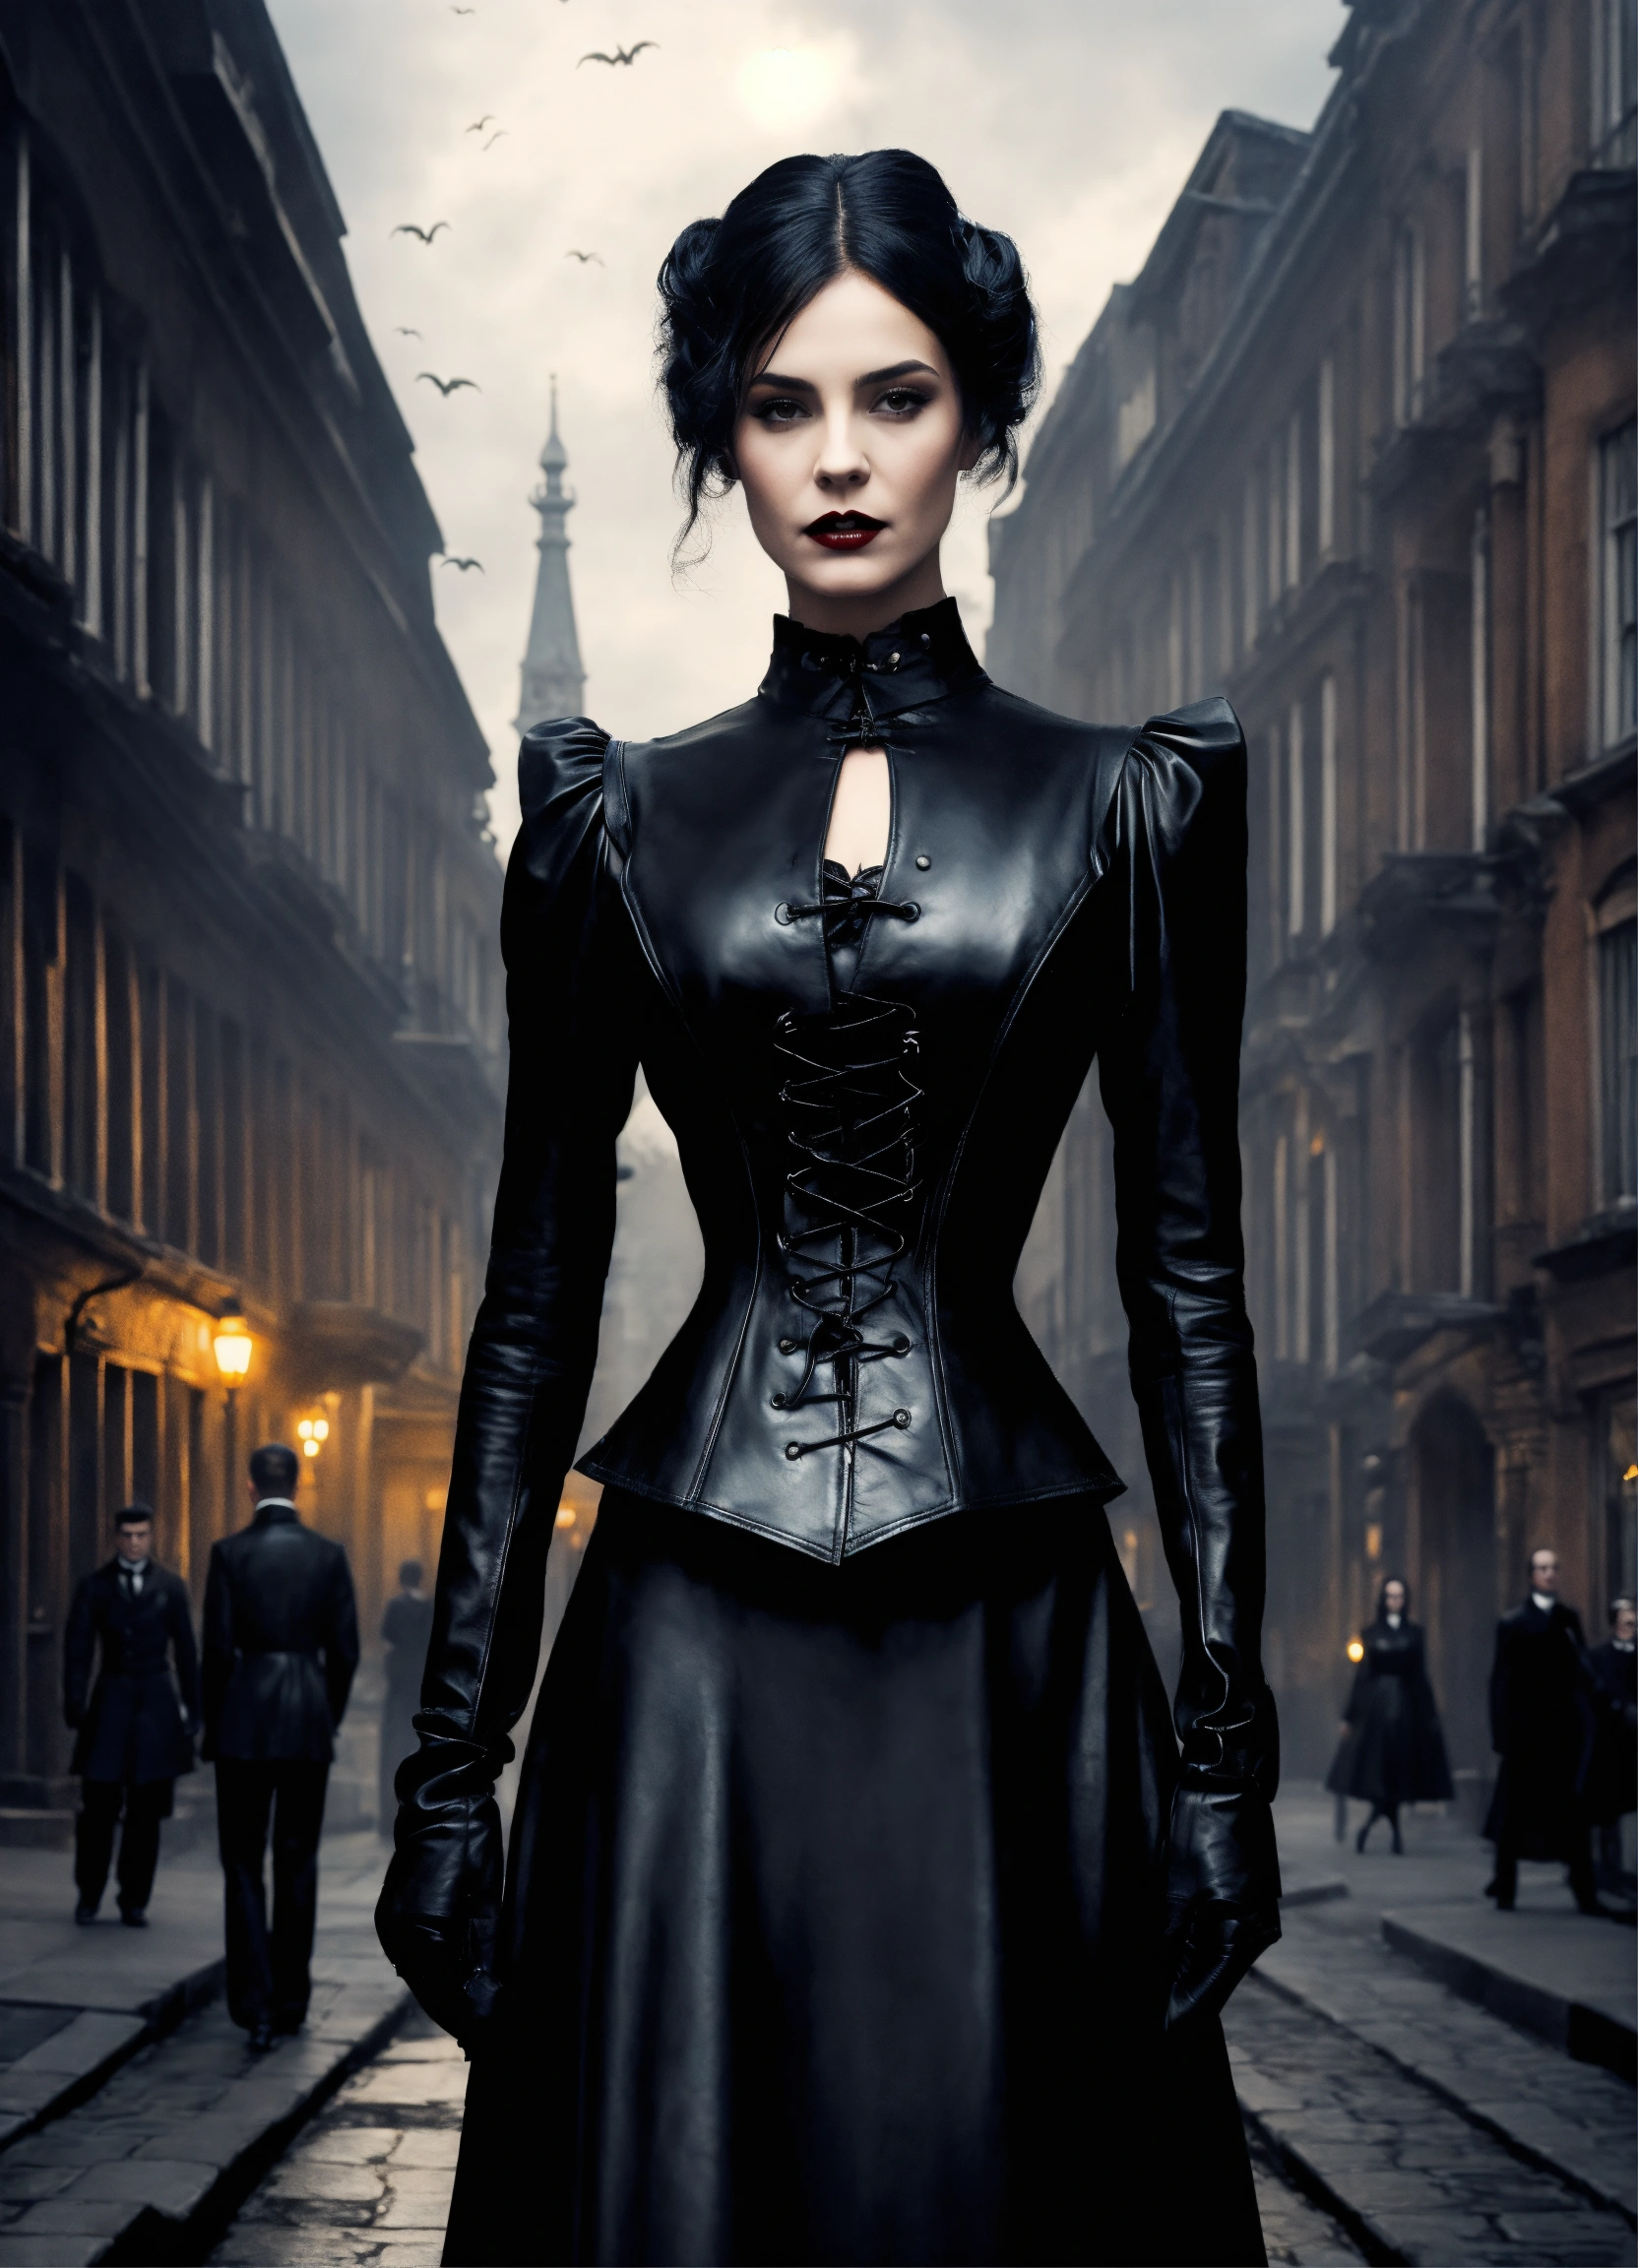 Lexica - Graphic novel art, stunning female vampire model, strict black ...